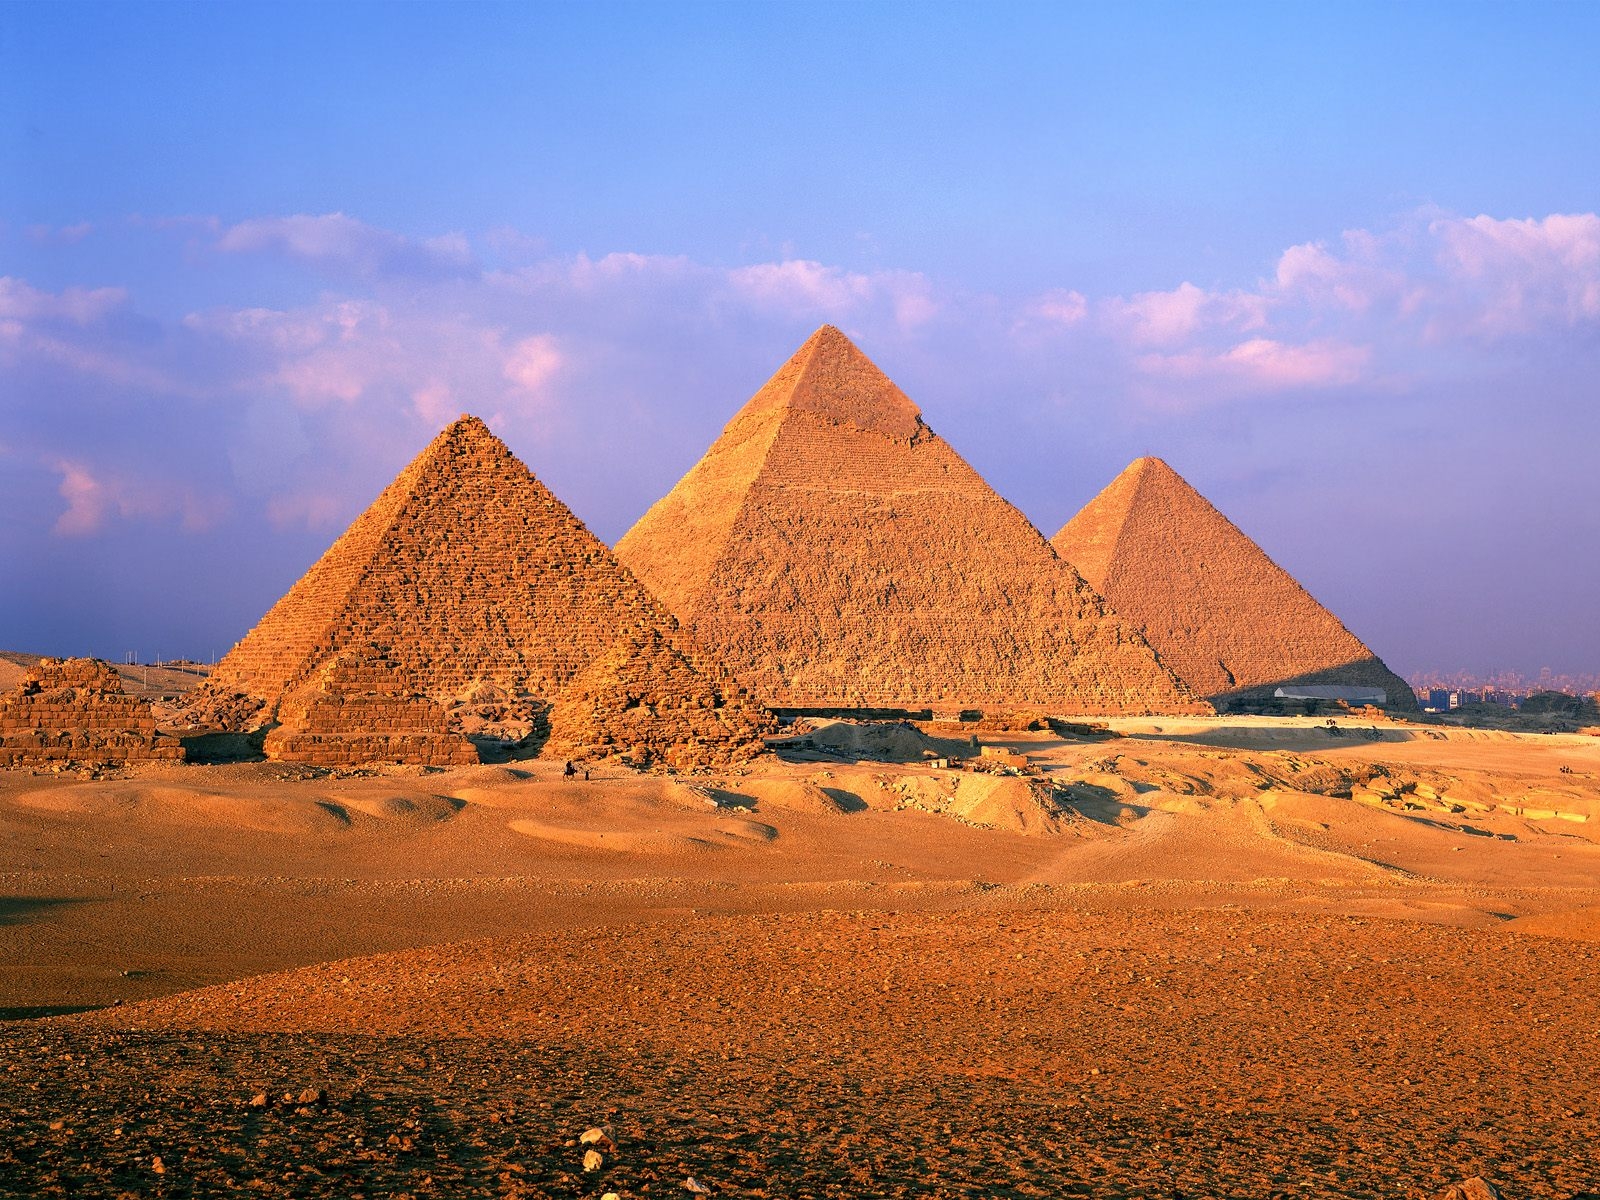 Fond d'ecran Pyramides d'Egypte